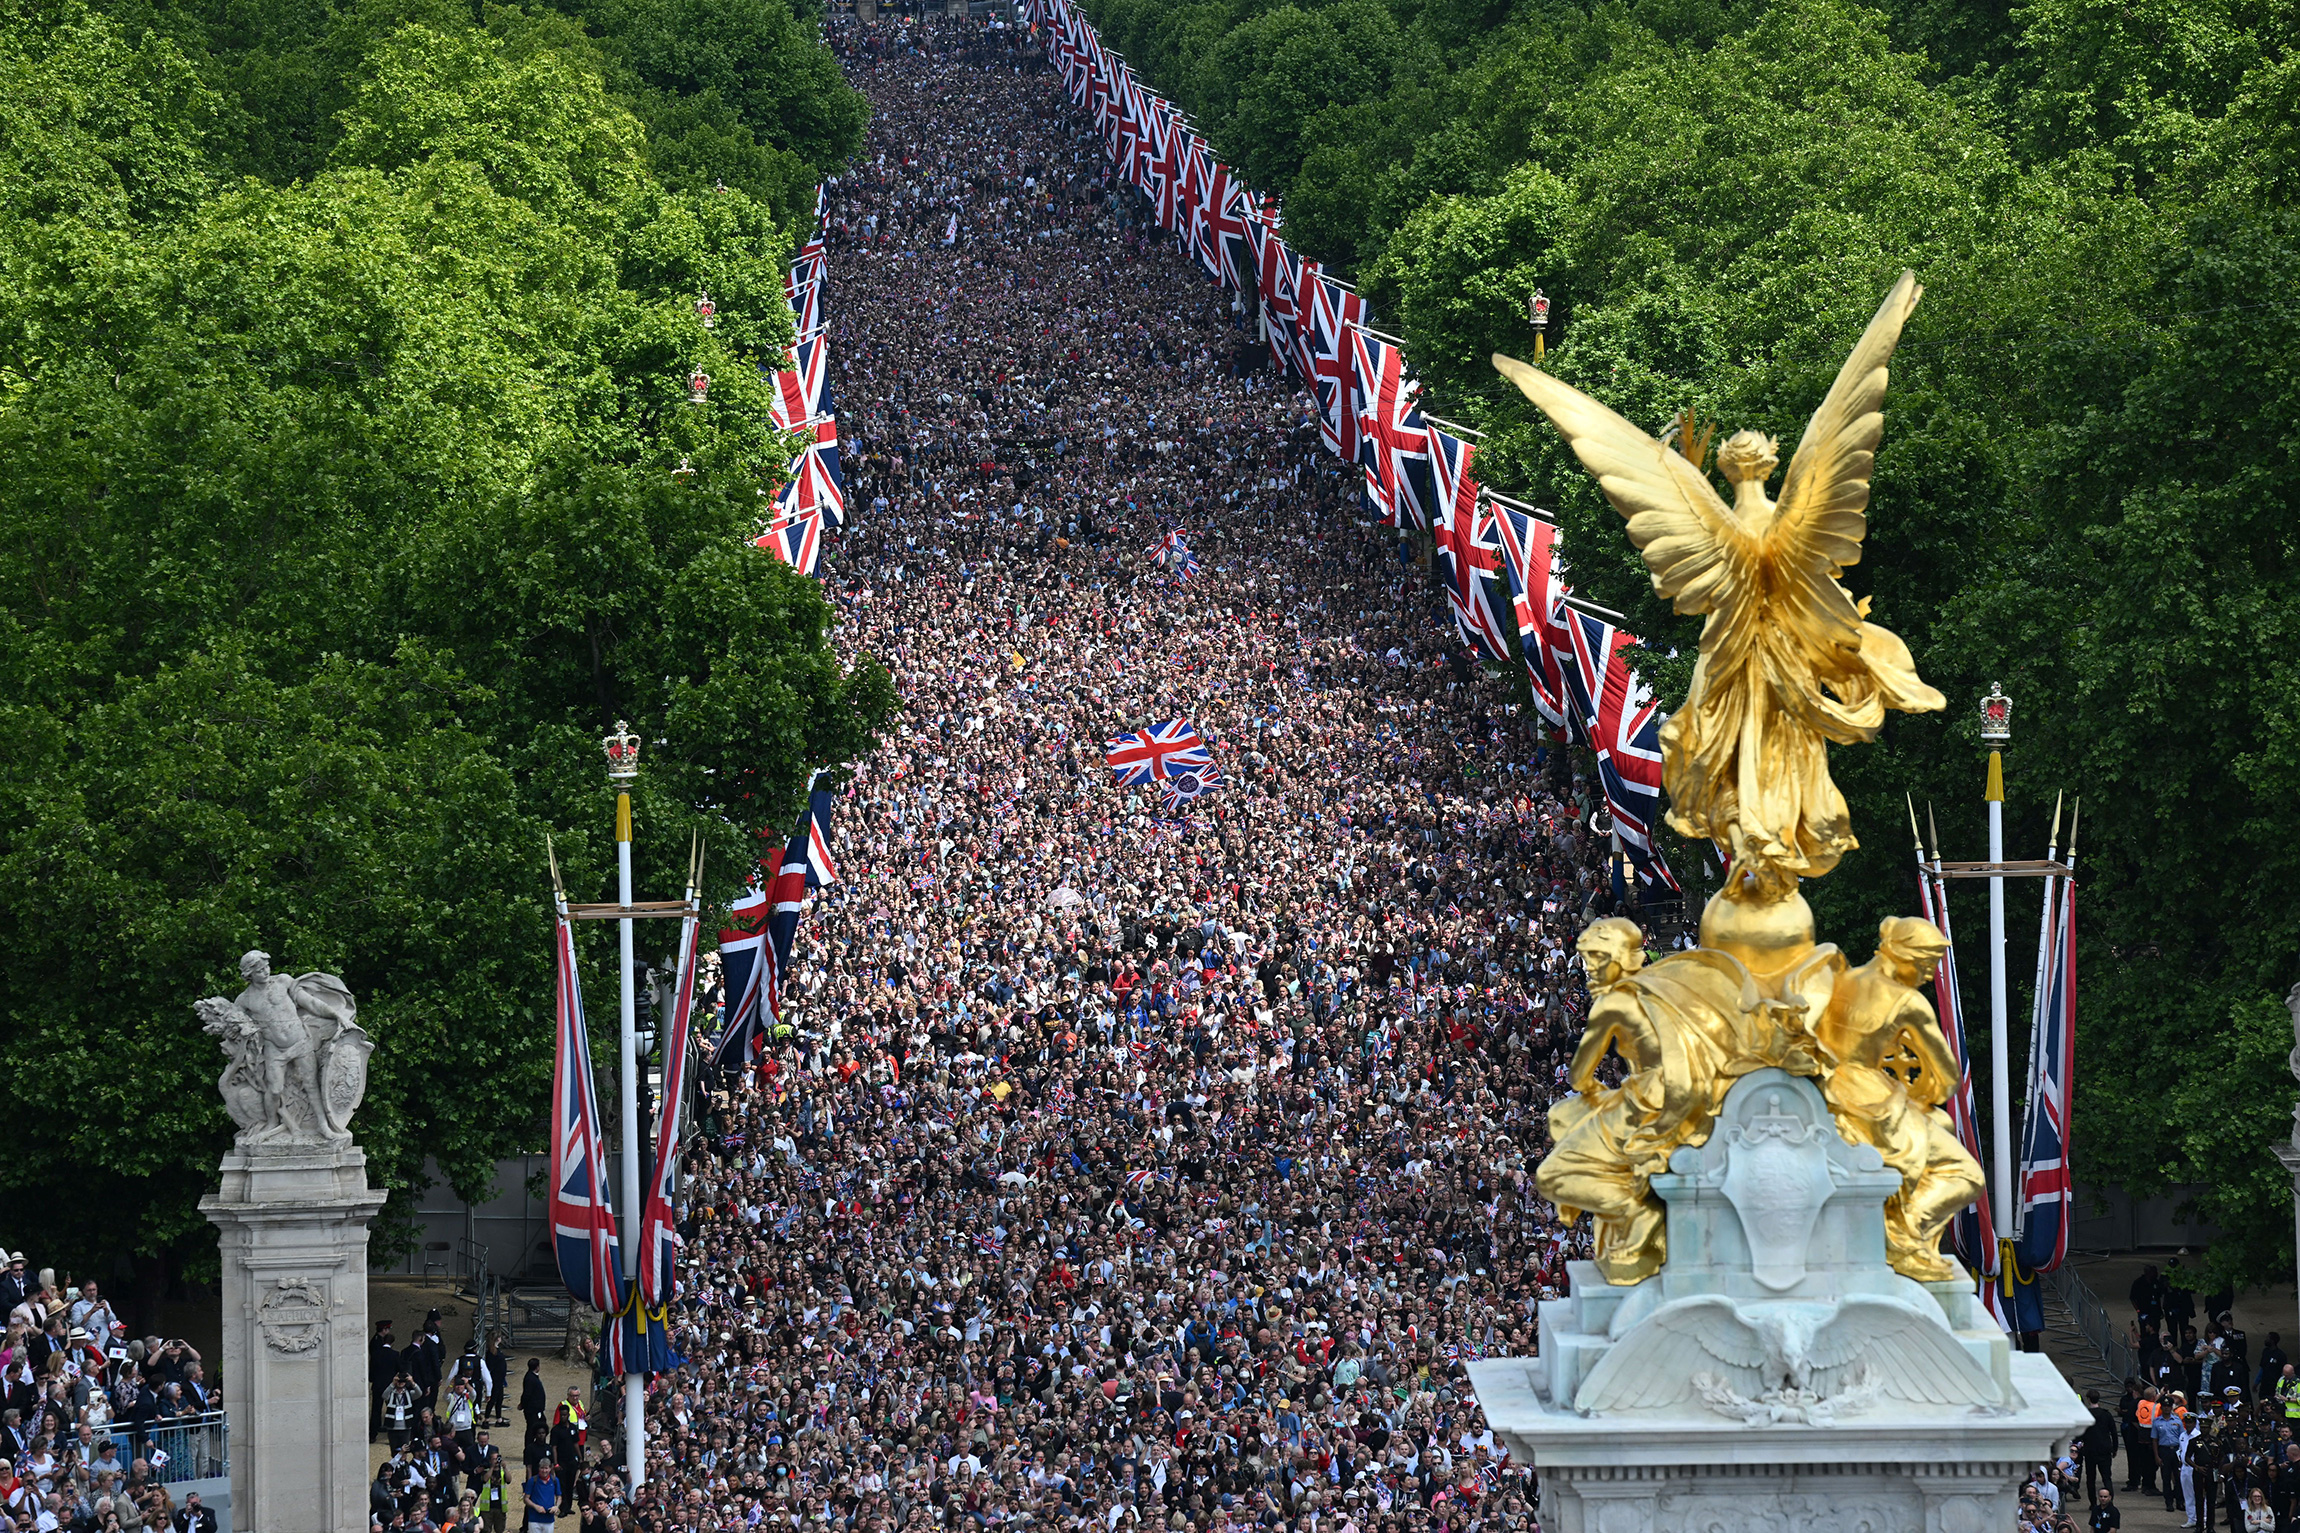 Заполненная людьми улица Мэлл в Лондоне перед торжественным парадом, 2 июня